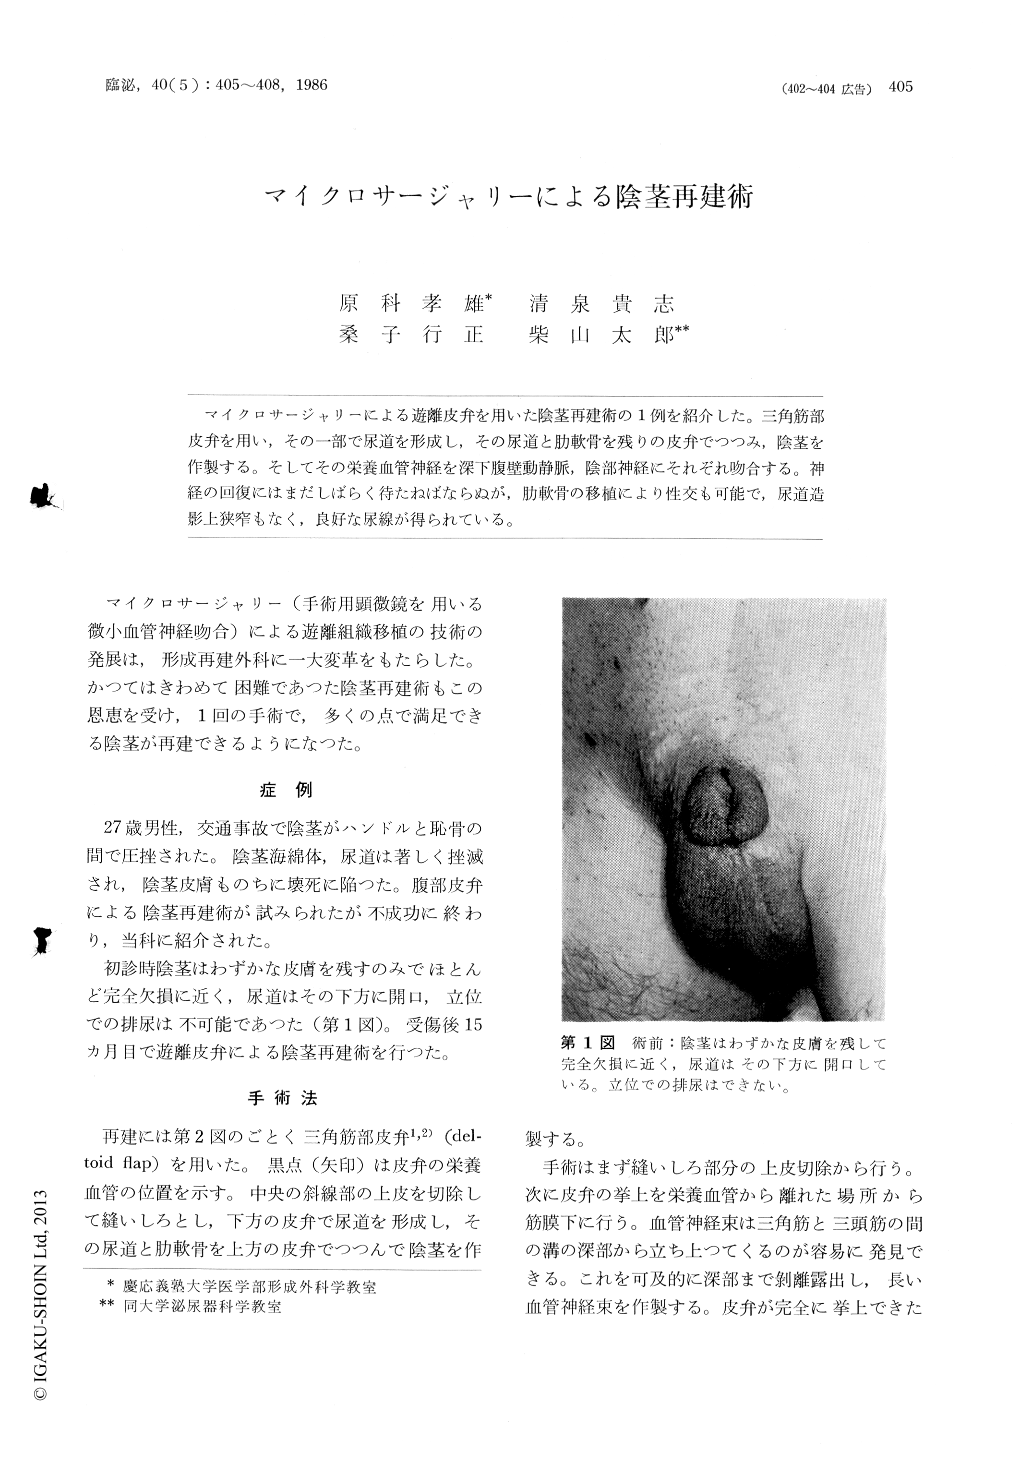 マイクロサージャリーによる陰茎再建術 臨床泌尿器科 40巻5号 医書 Jp